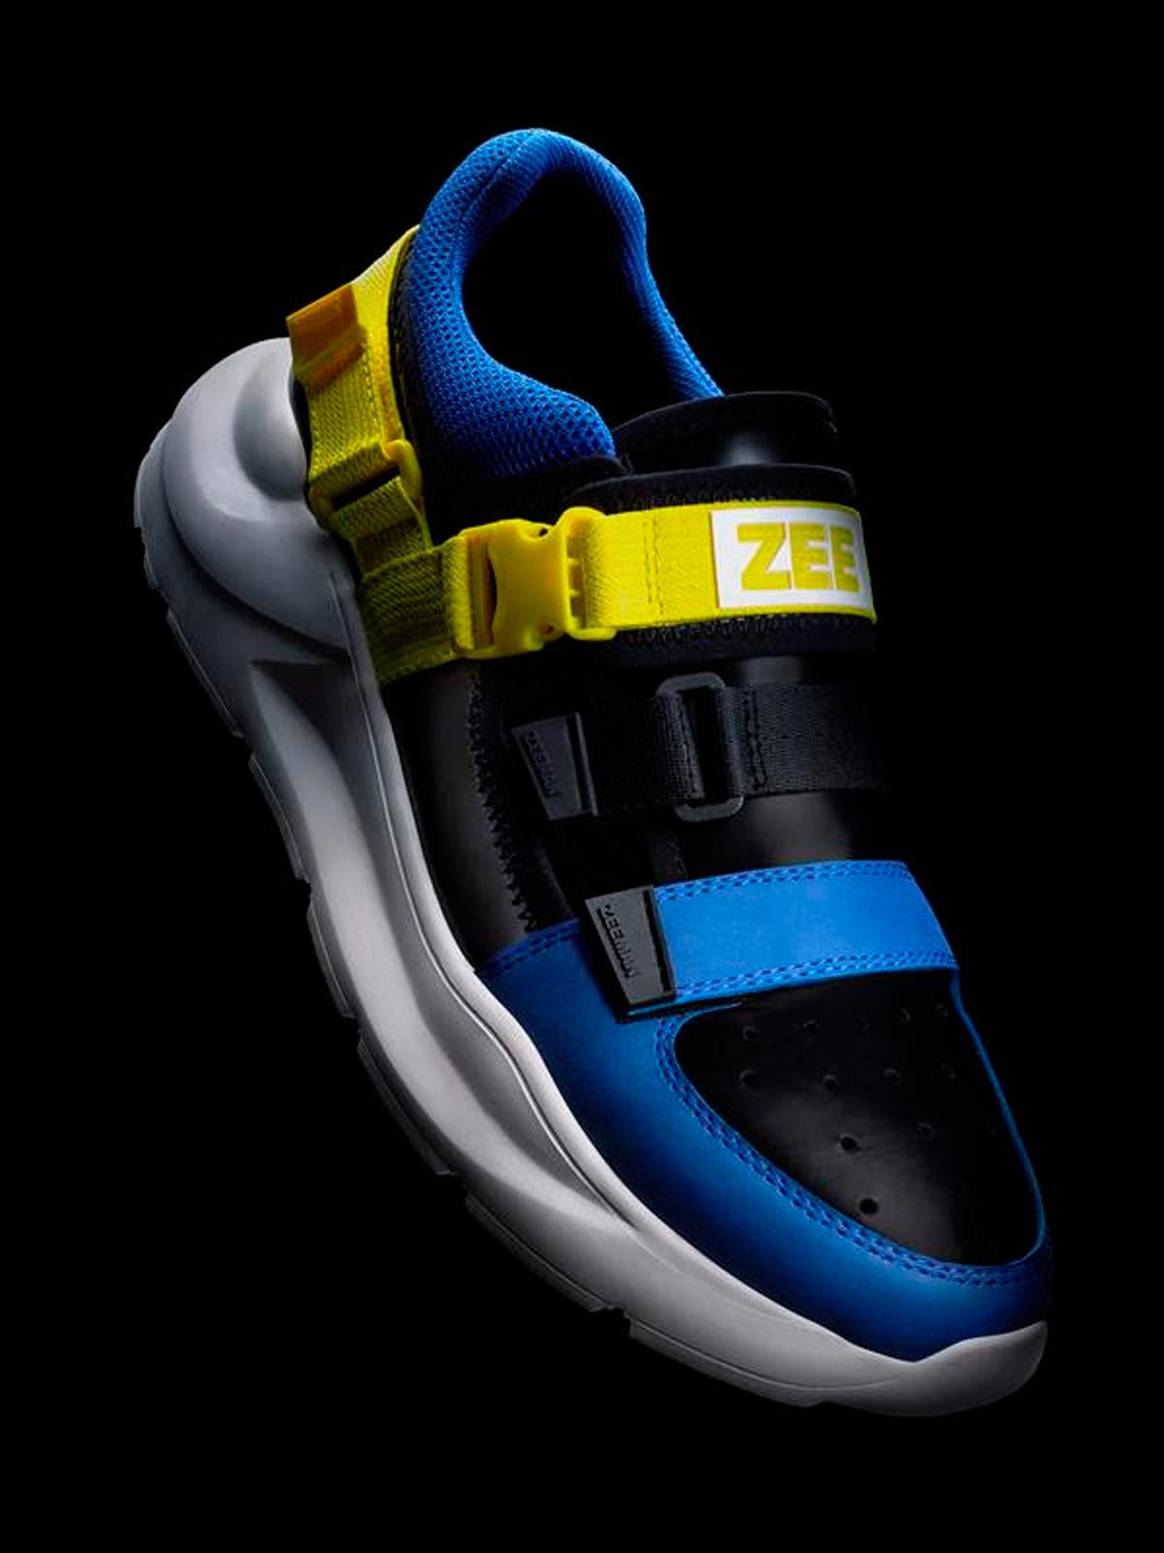 Discounter Zeeman veralbert teure Sneaker-Drops in seiner Kampagne